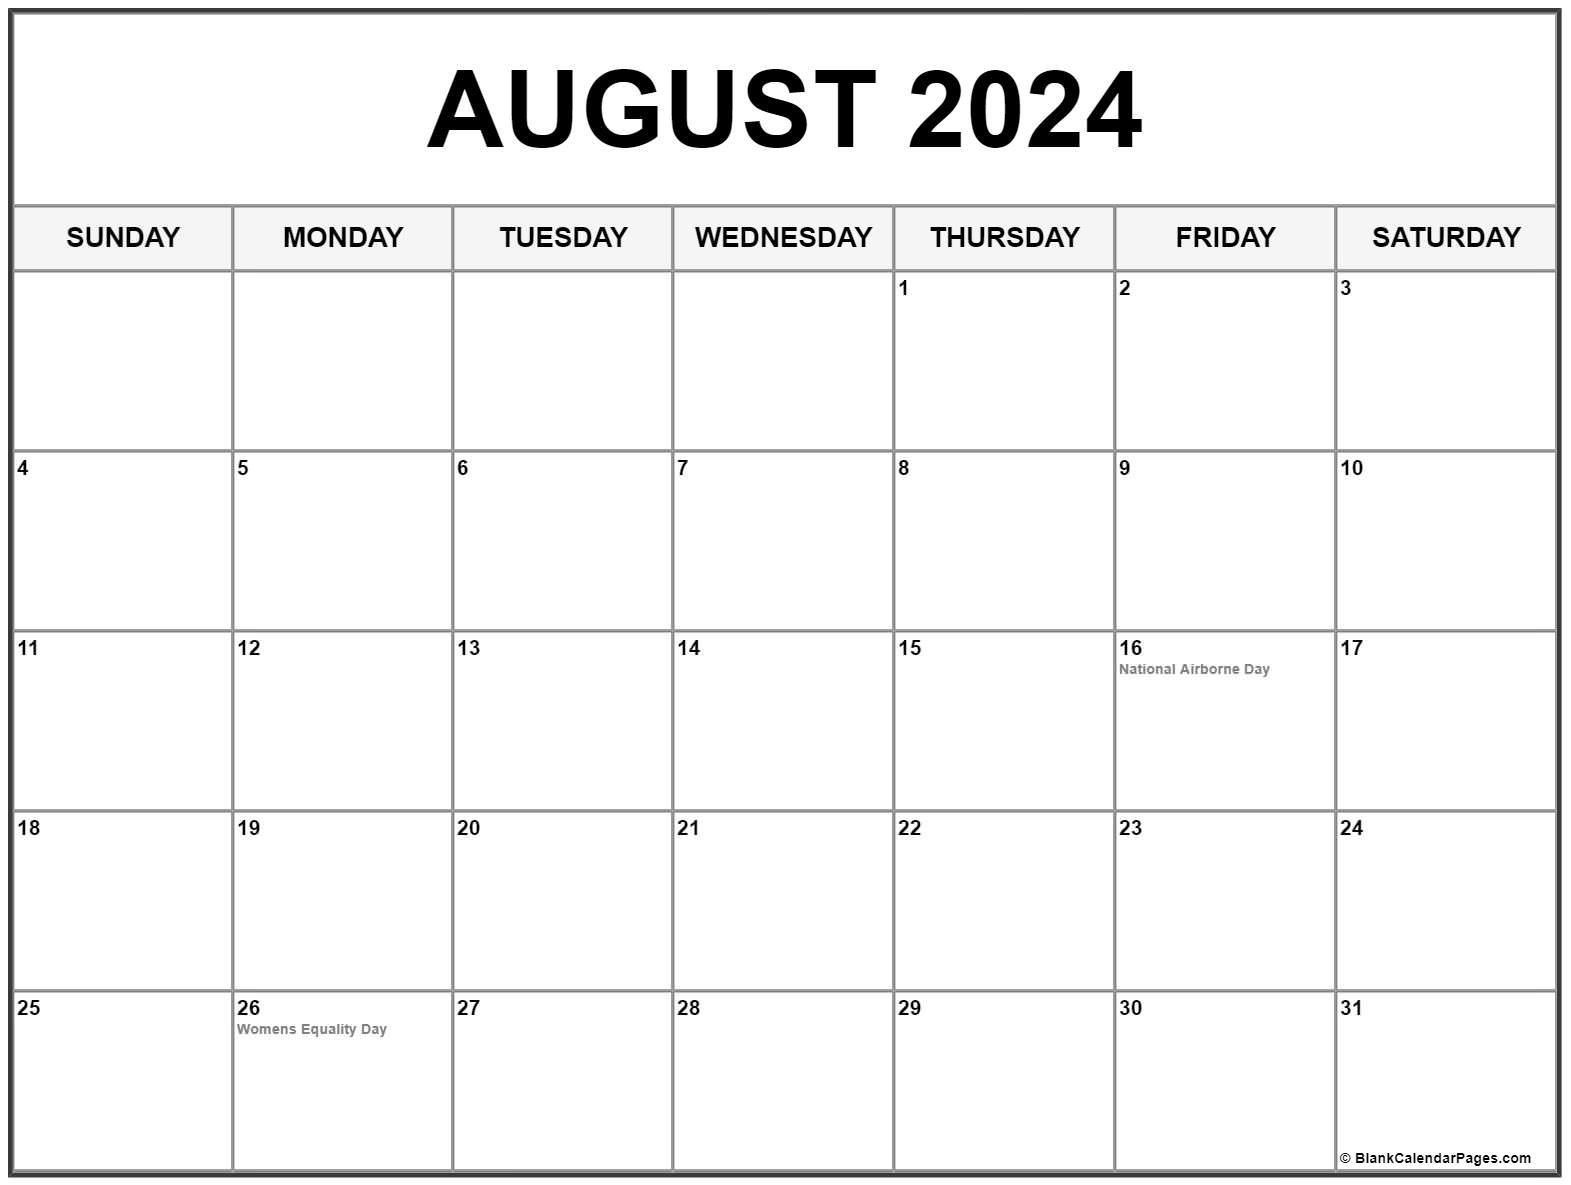 August 2024 Holidays Us Lexi Shayne